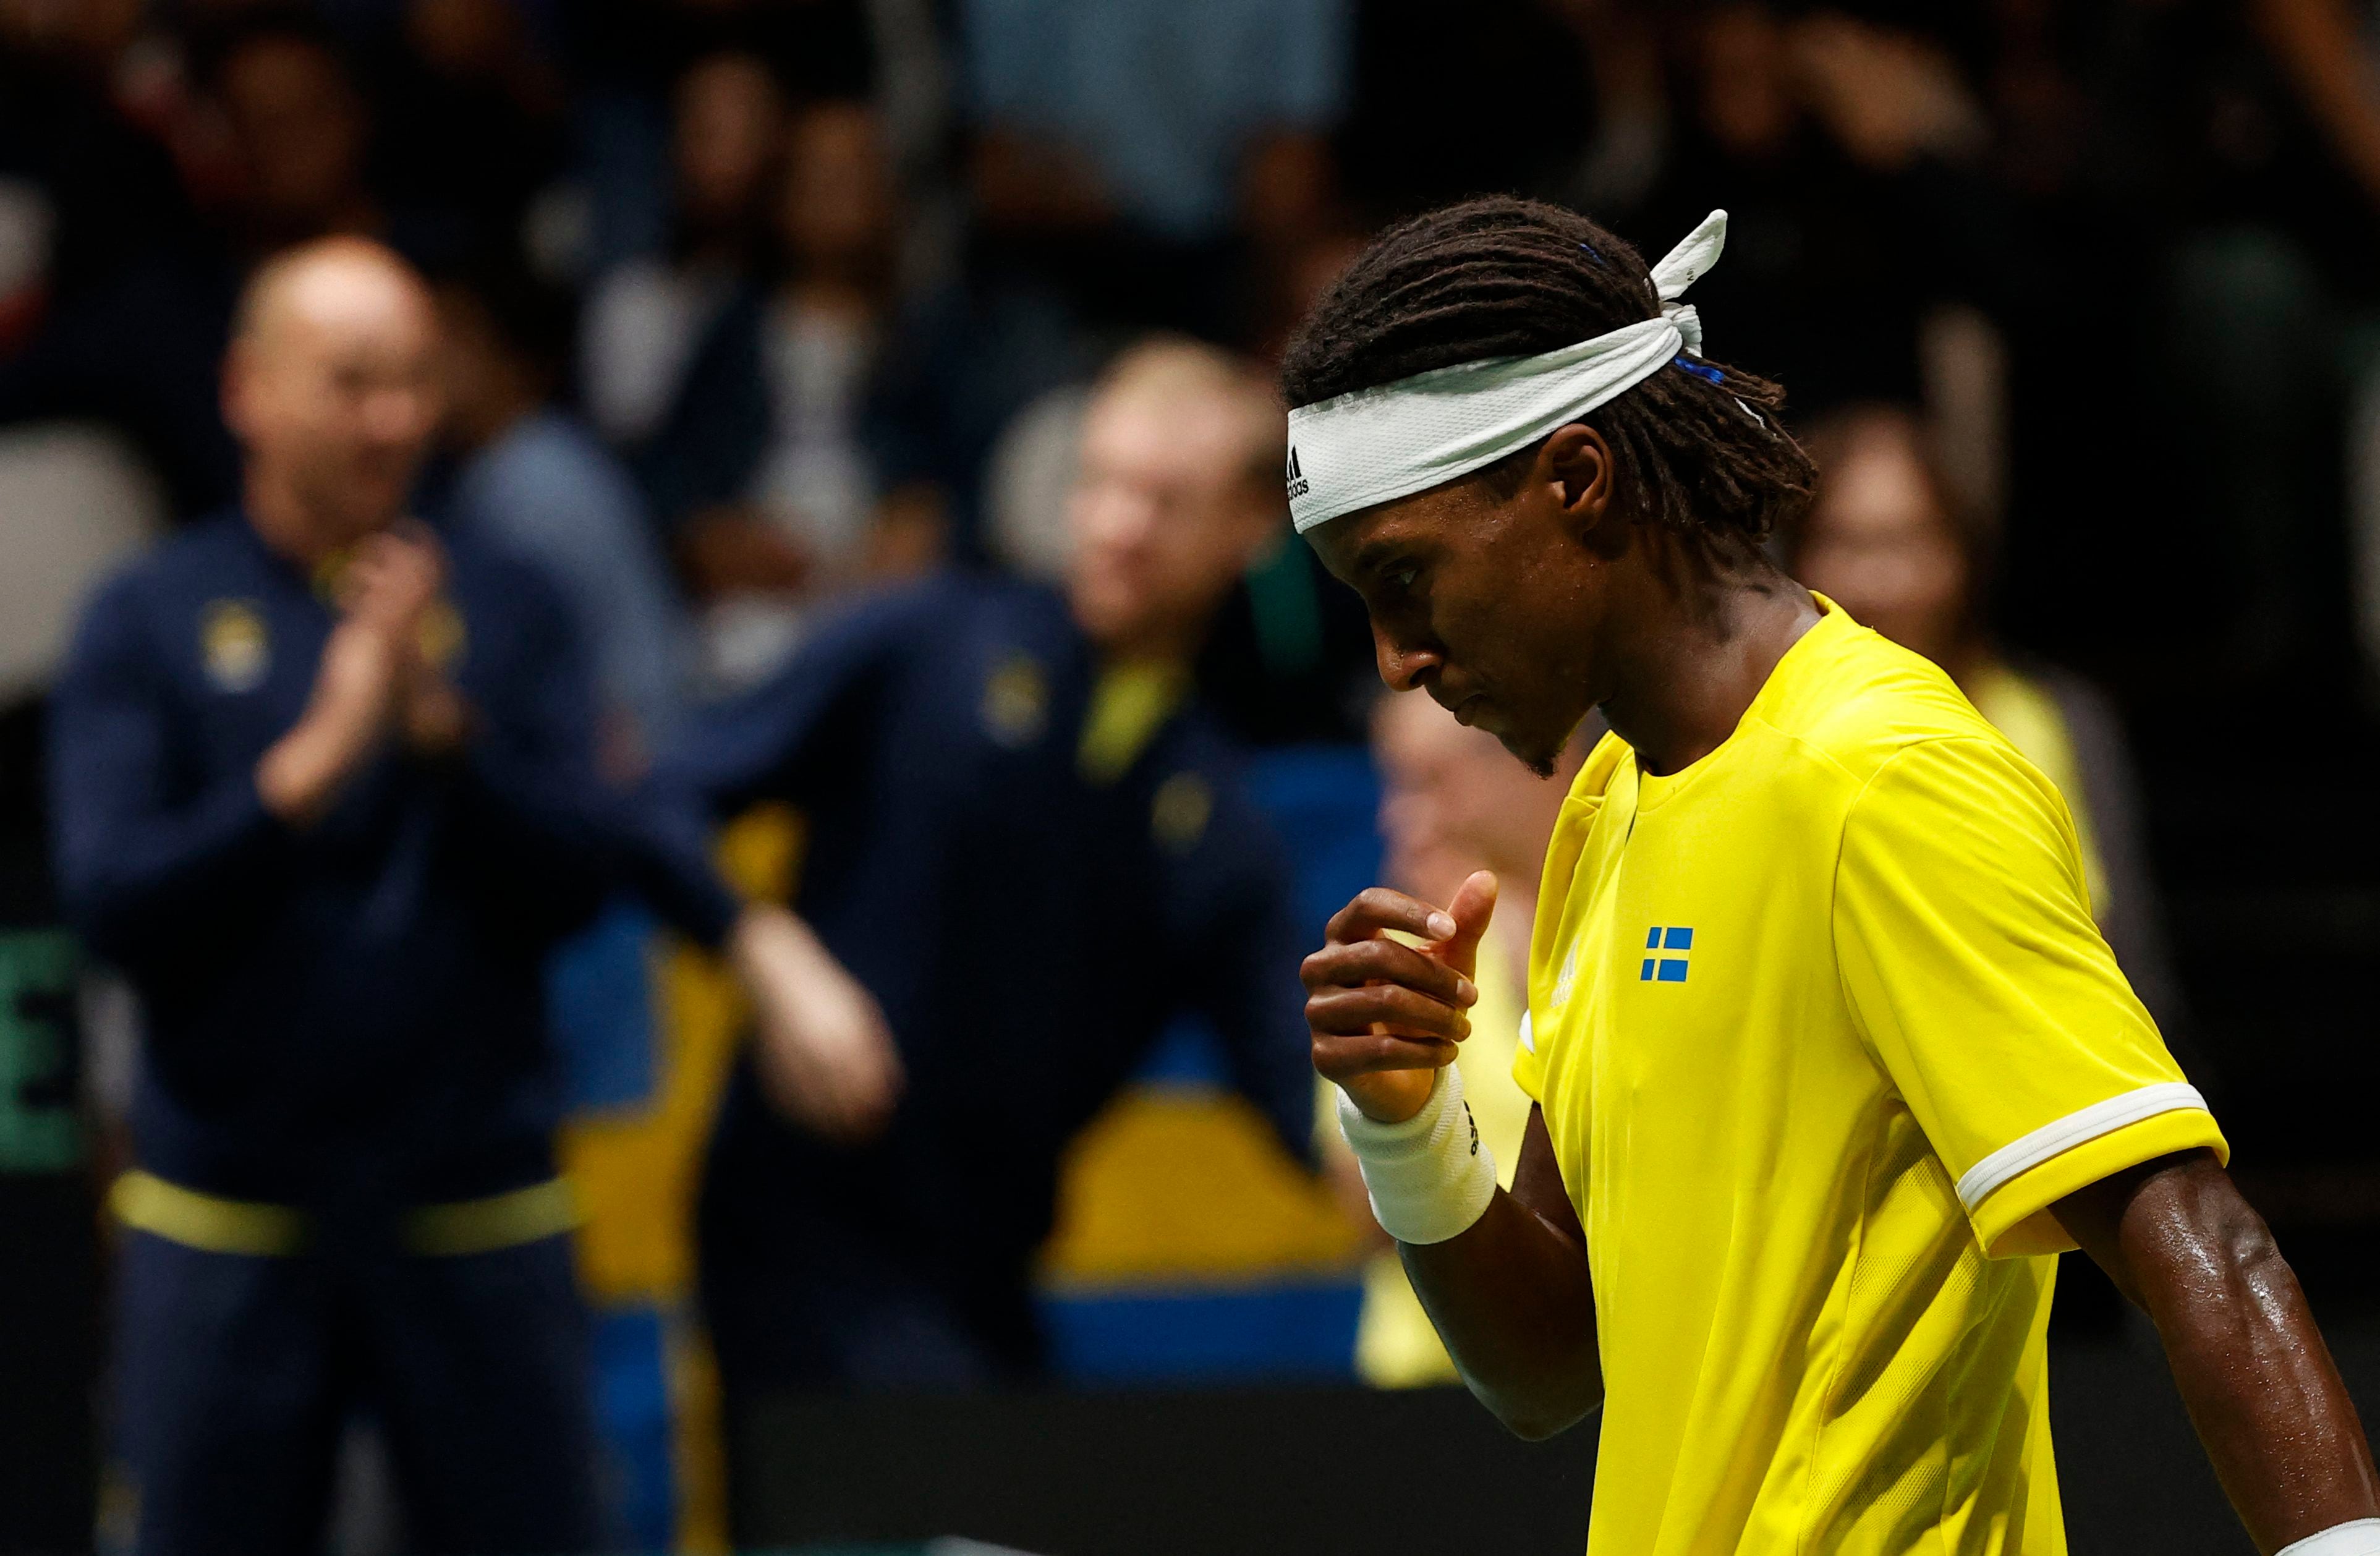 El sueco Mikael Ymer se retiró del tenis tras ser suspendido por saltearse tres controles de dopaje según ITF (REUTERS/Ciro De Luca)